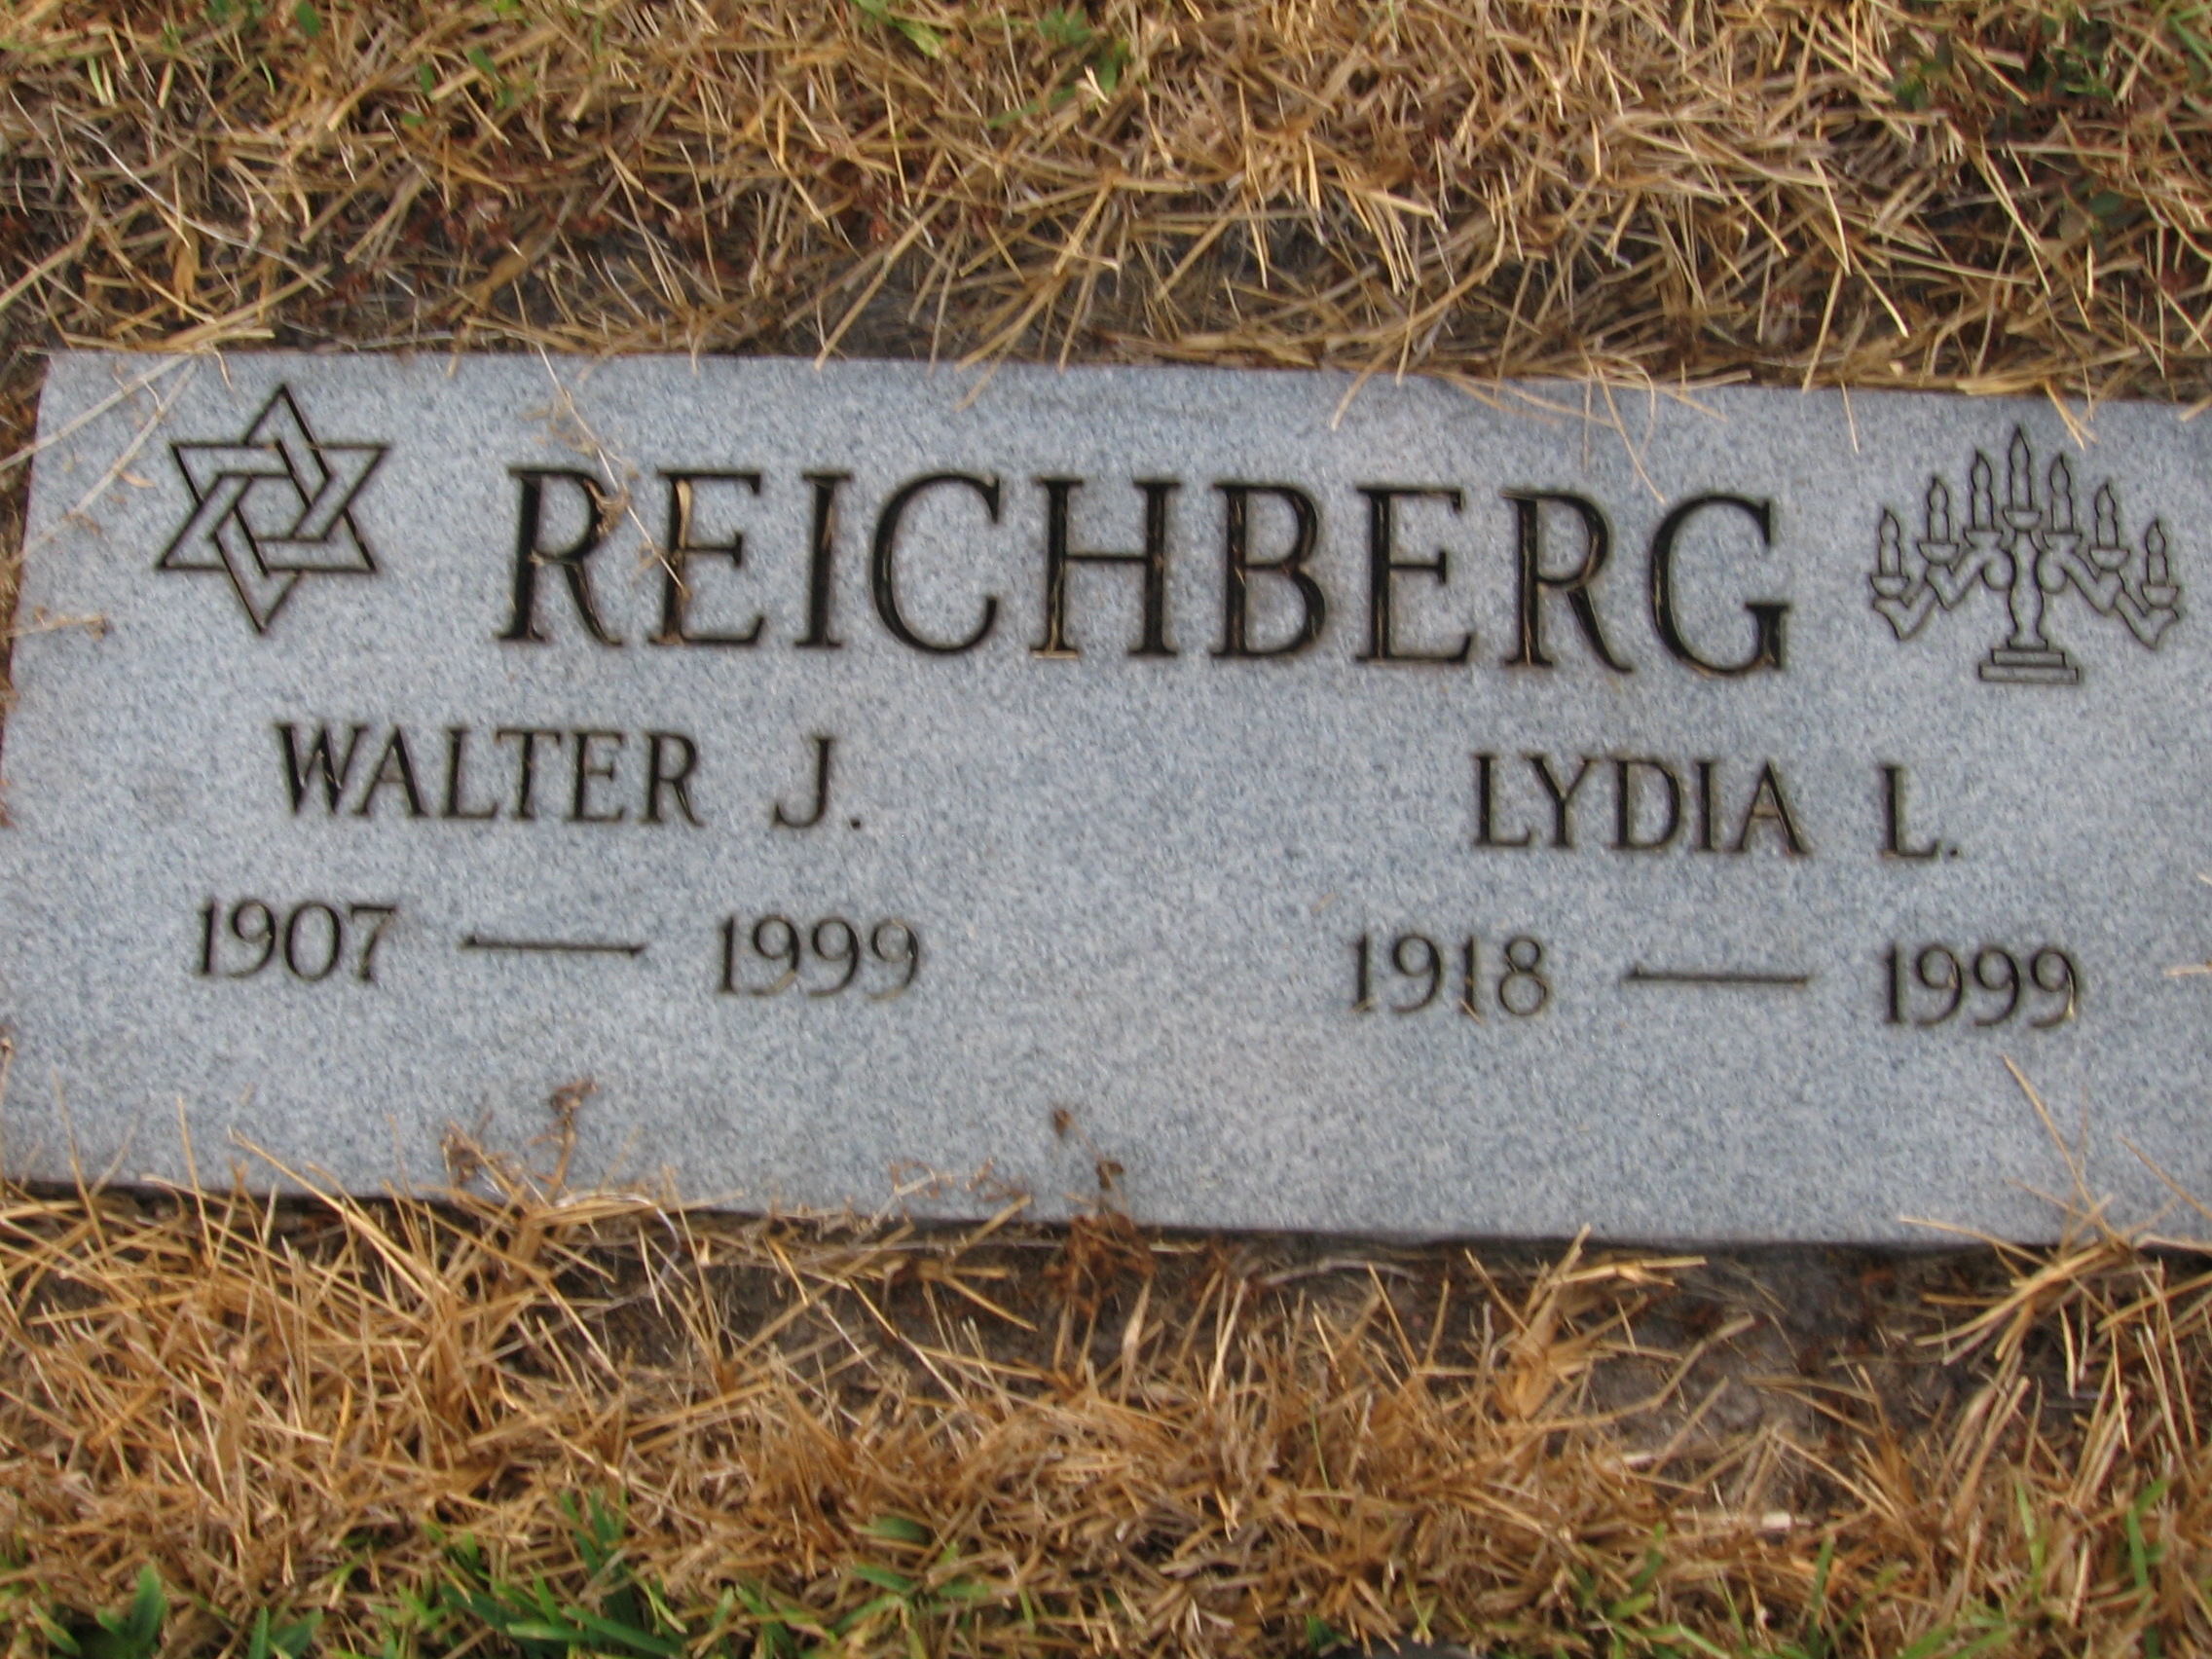 Walter J Reichberg